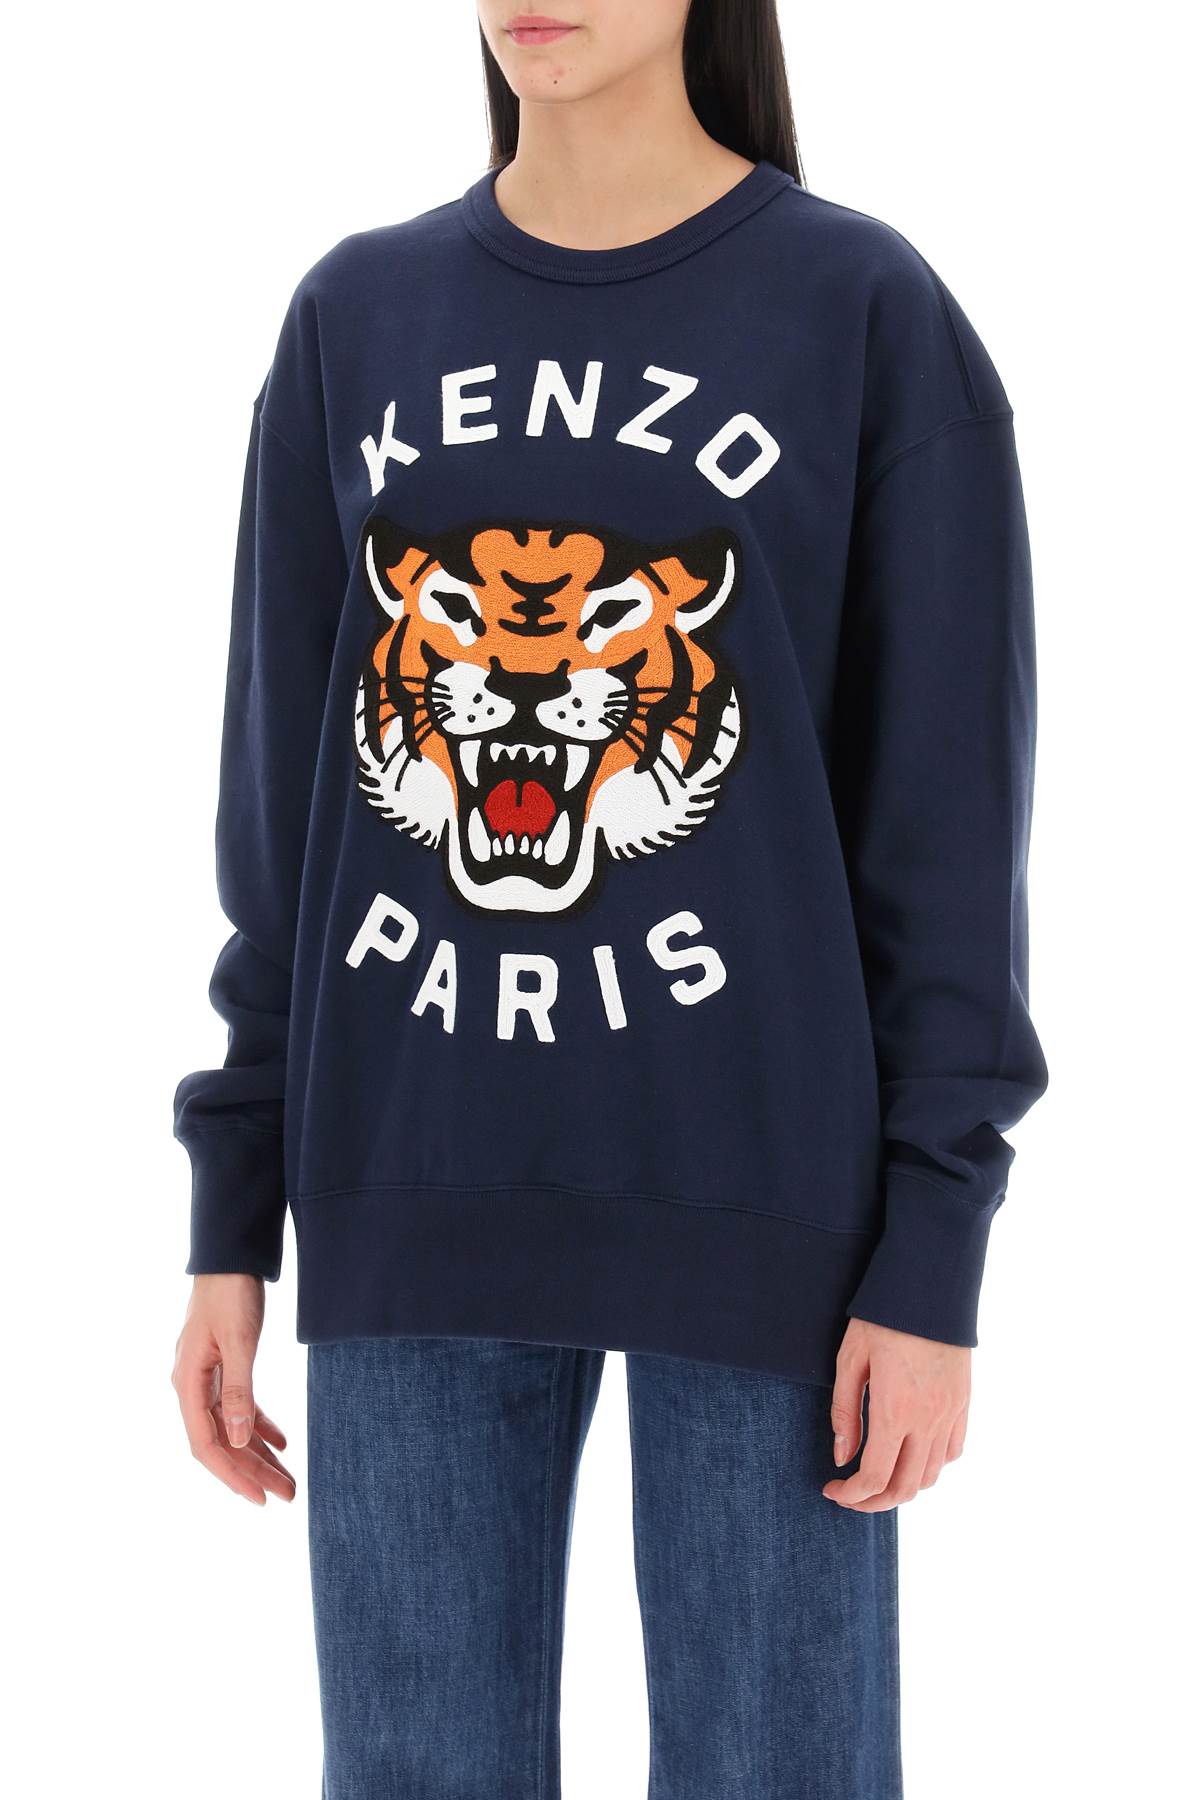 Kenzo 'lucky tiger' oversized sweatshirt